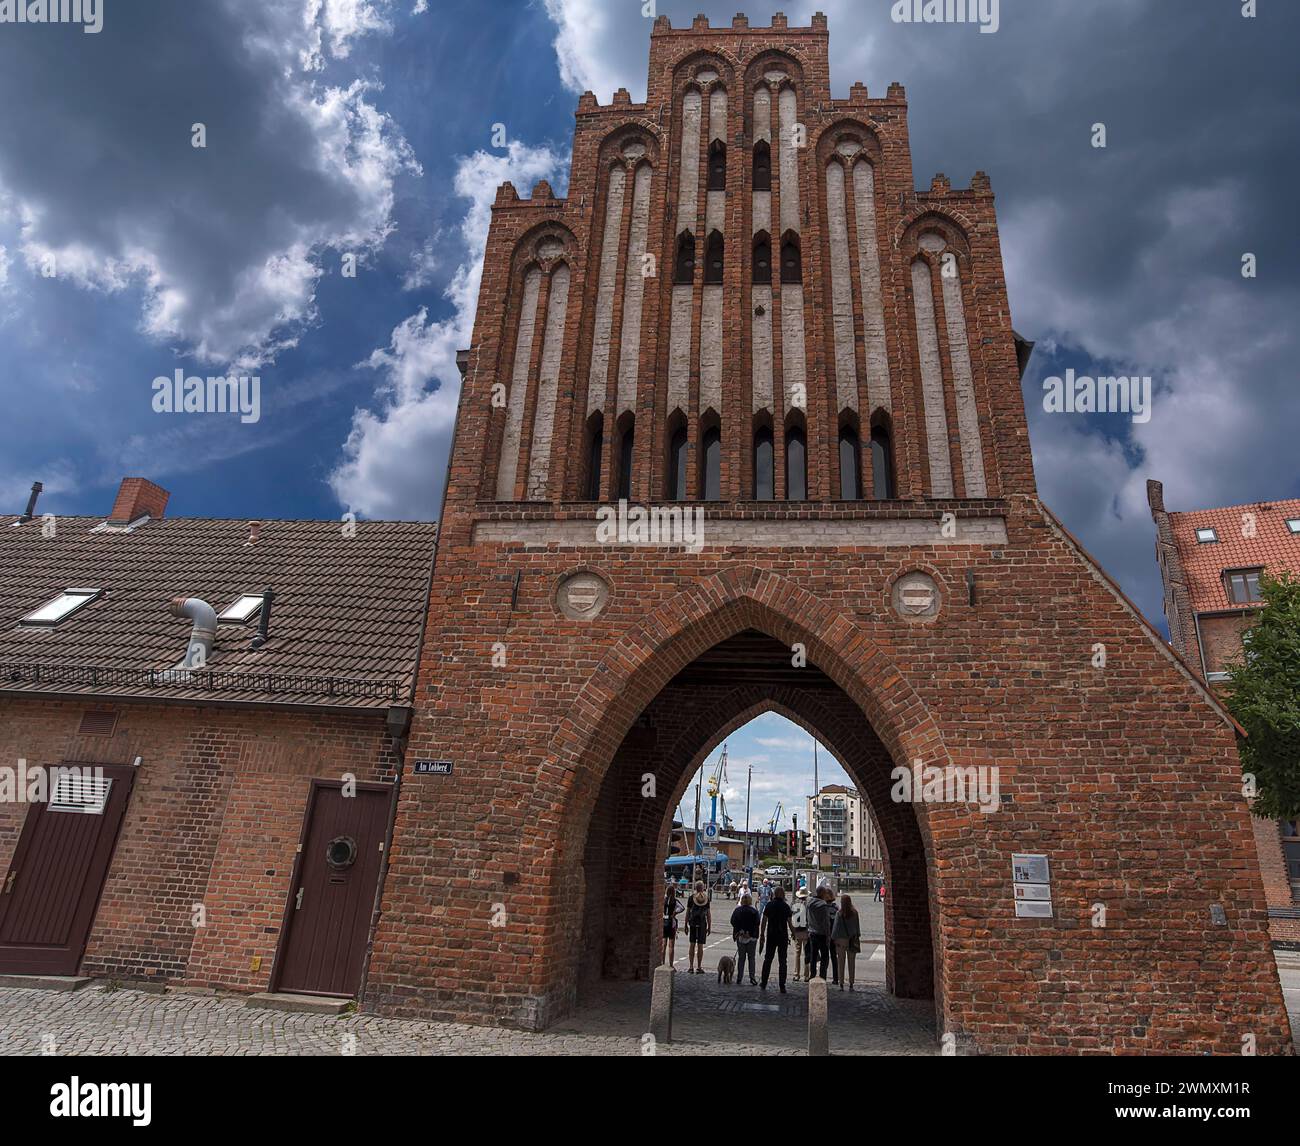 Historic water gate in brick Gothic style built in 1450, Am Hafen 1, Wismar, Mecklenburg-Vorpommern, Germany Stock Photo